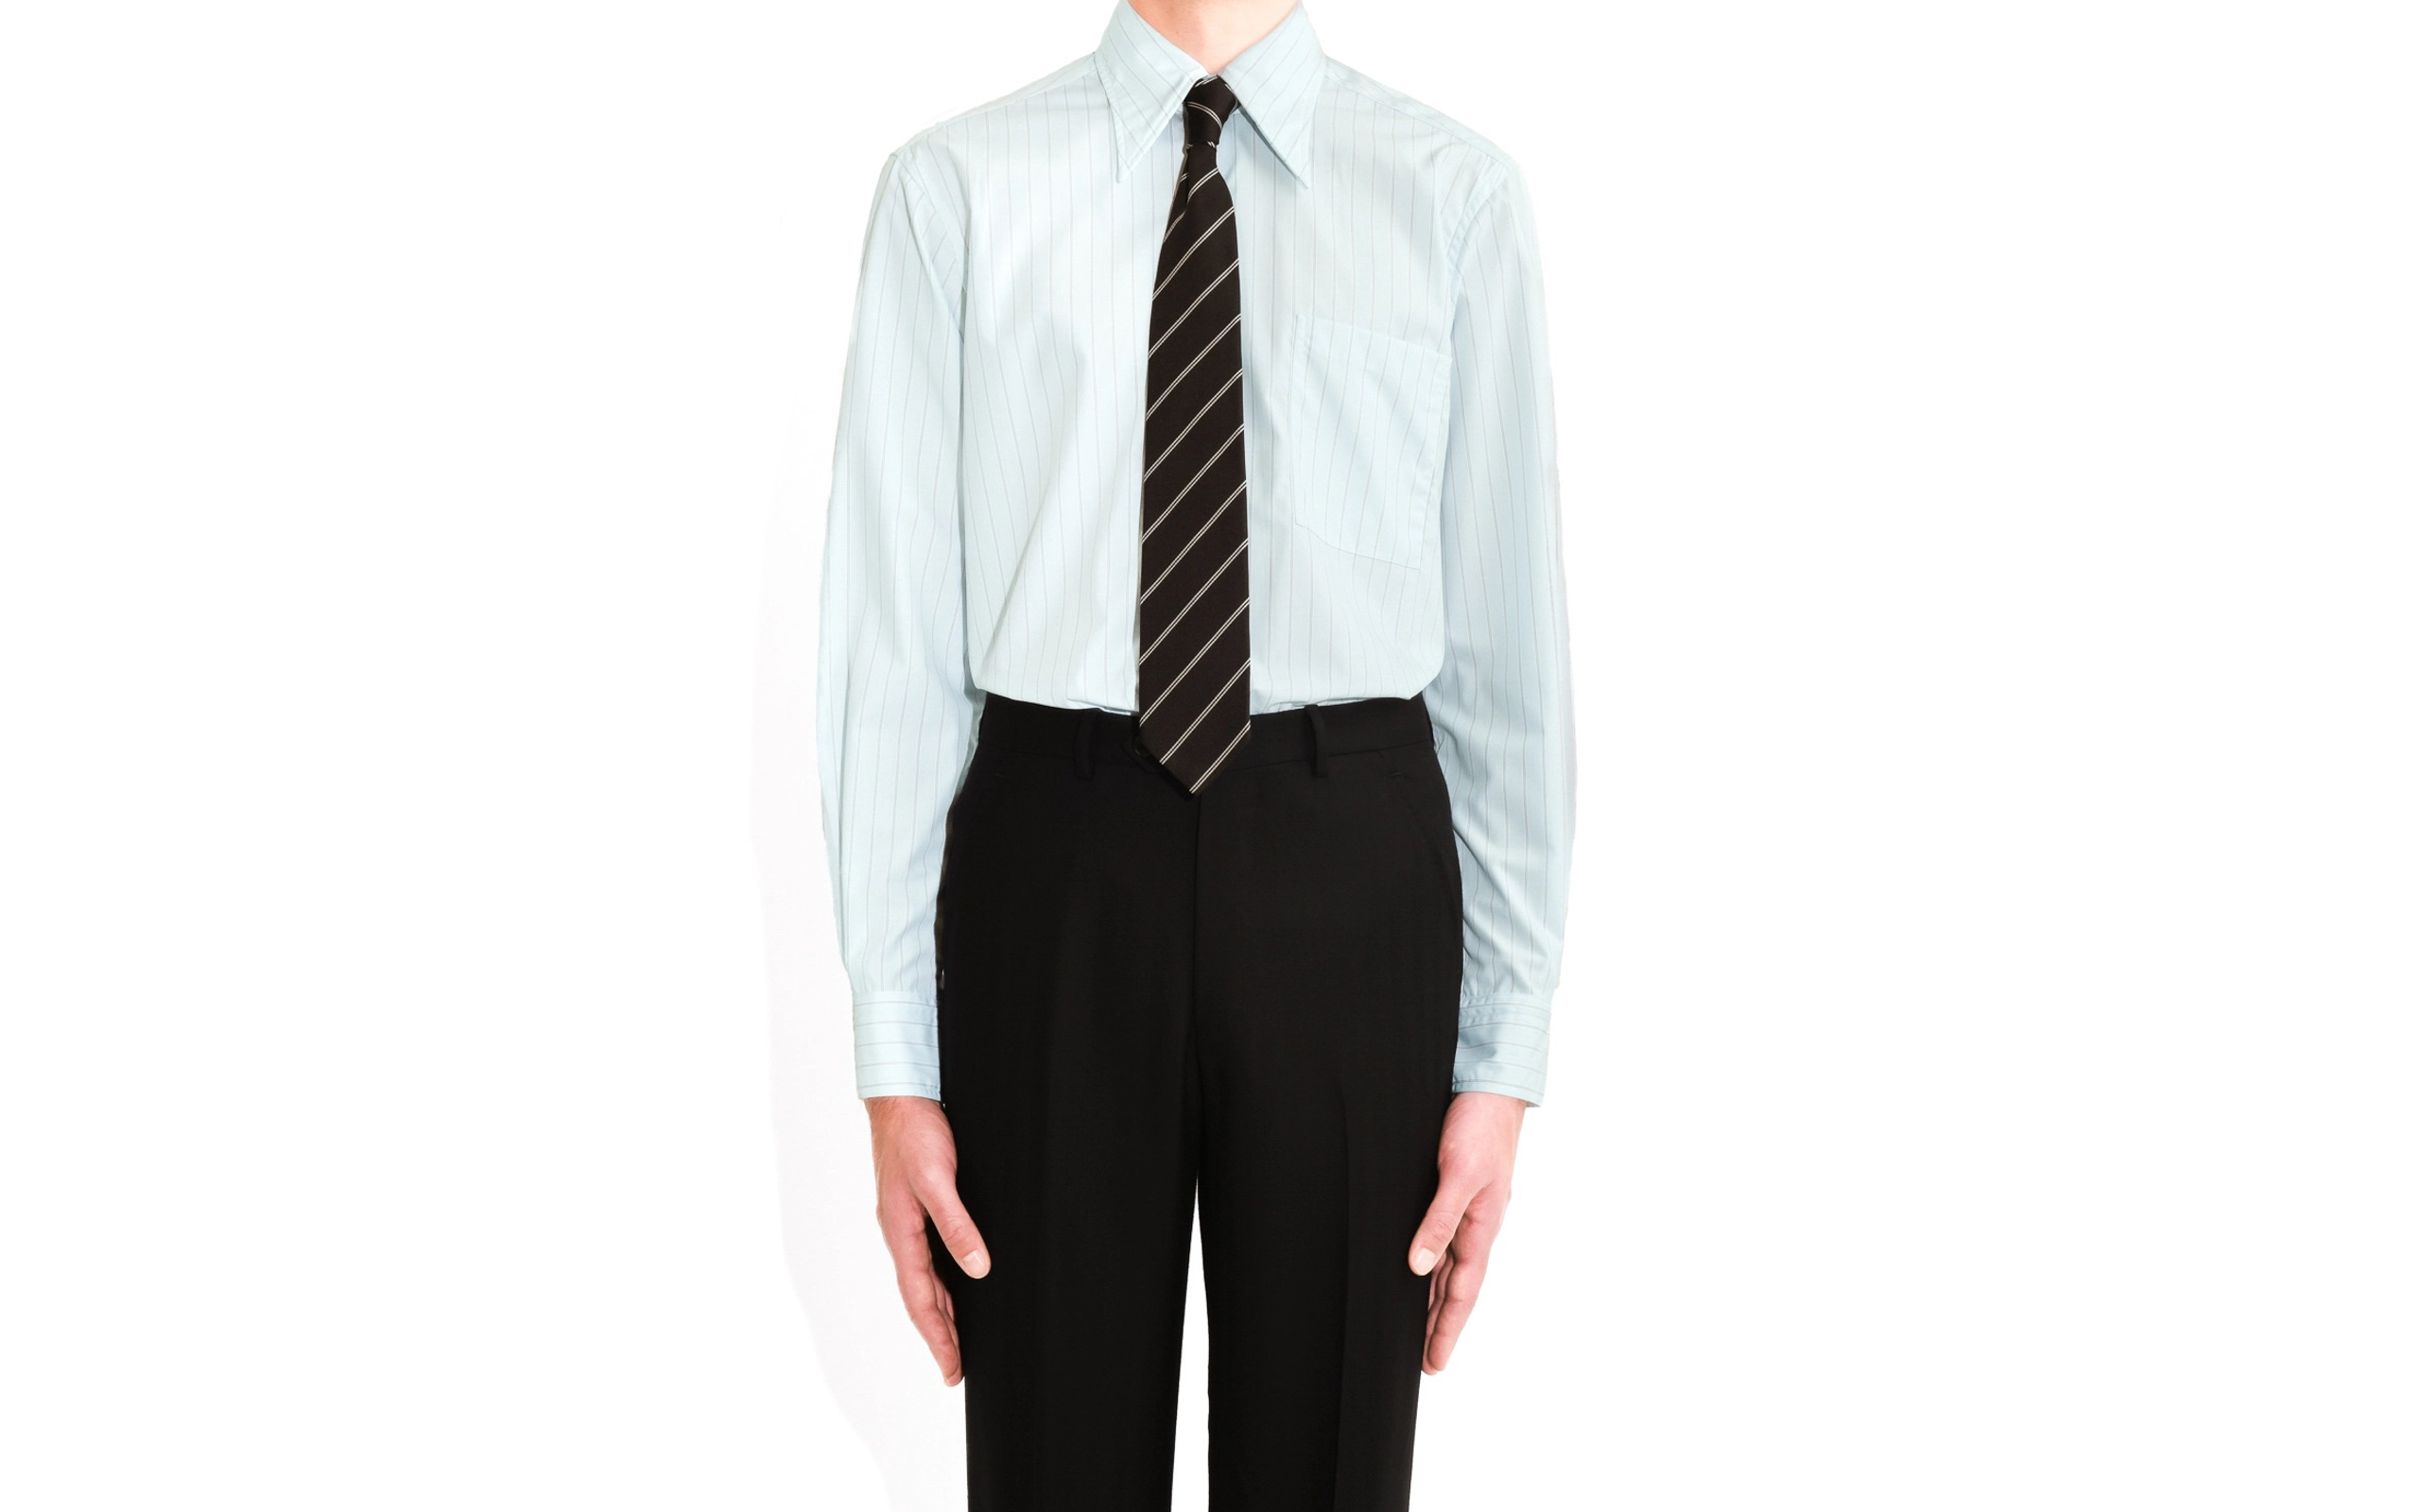 Wearing White Shirt Black Tie Gray Stock Photo 177392705 | Shutterstock